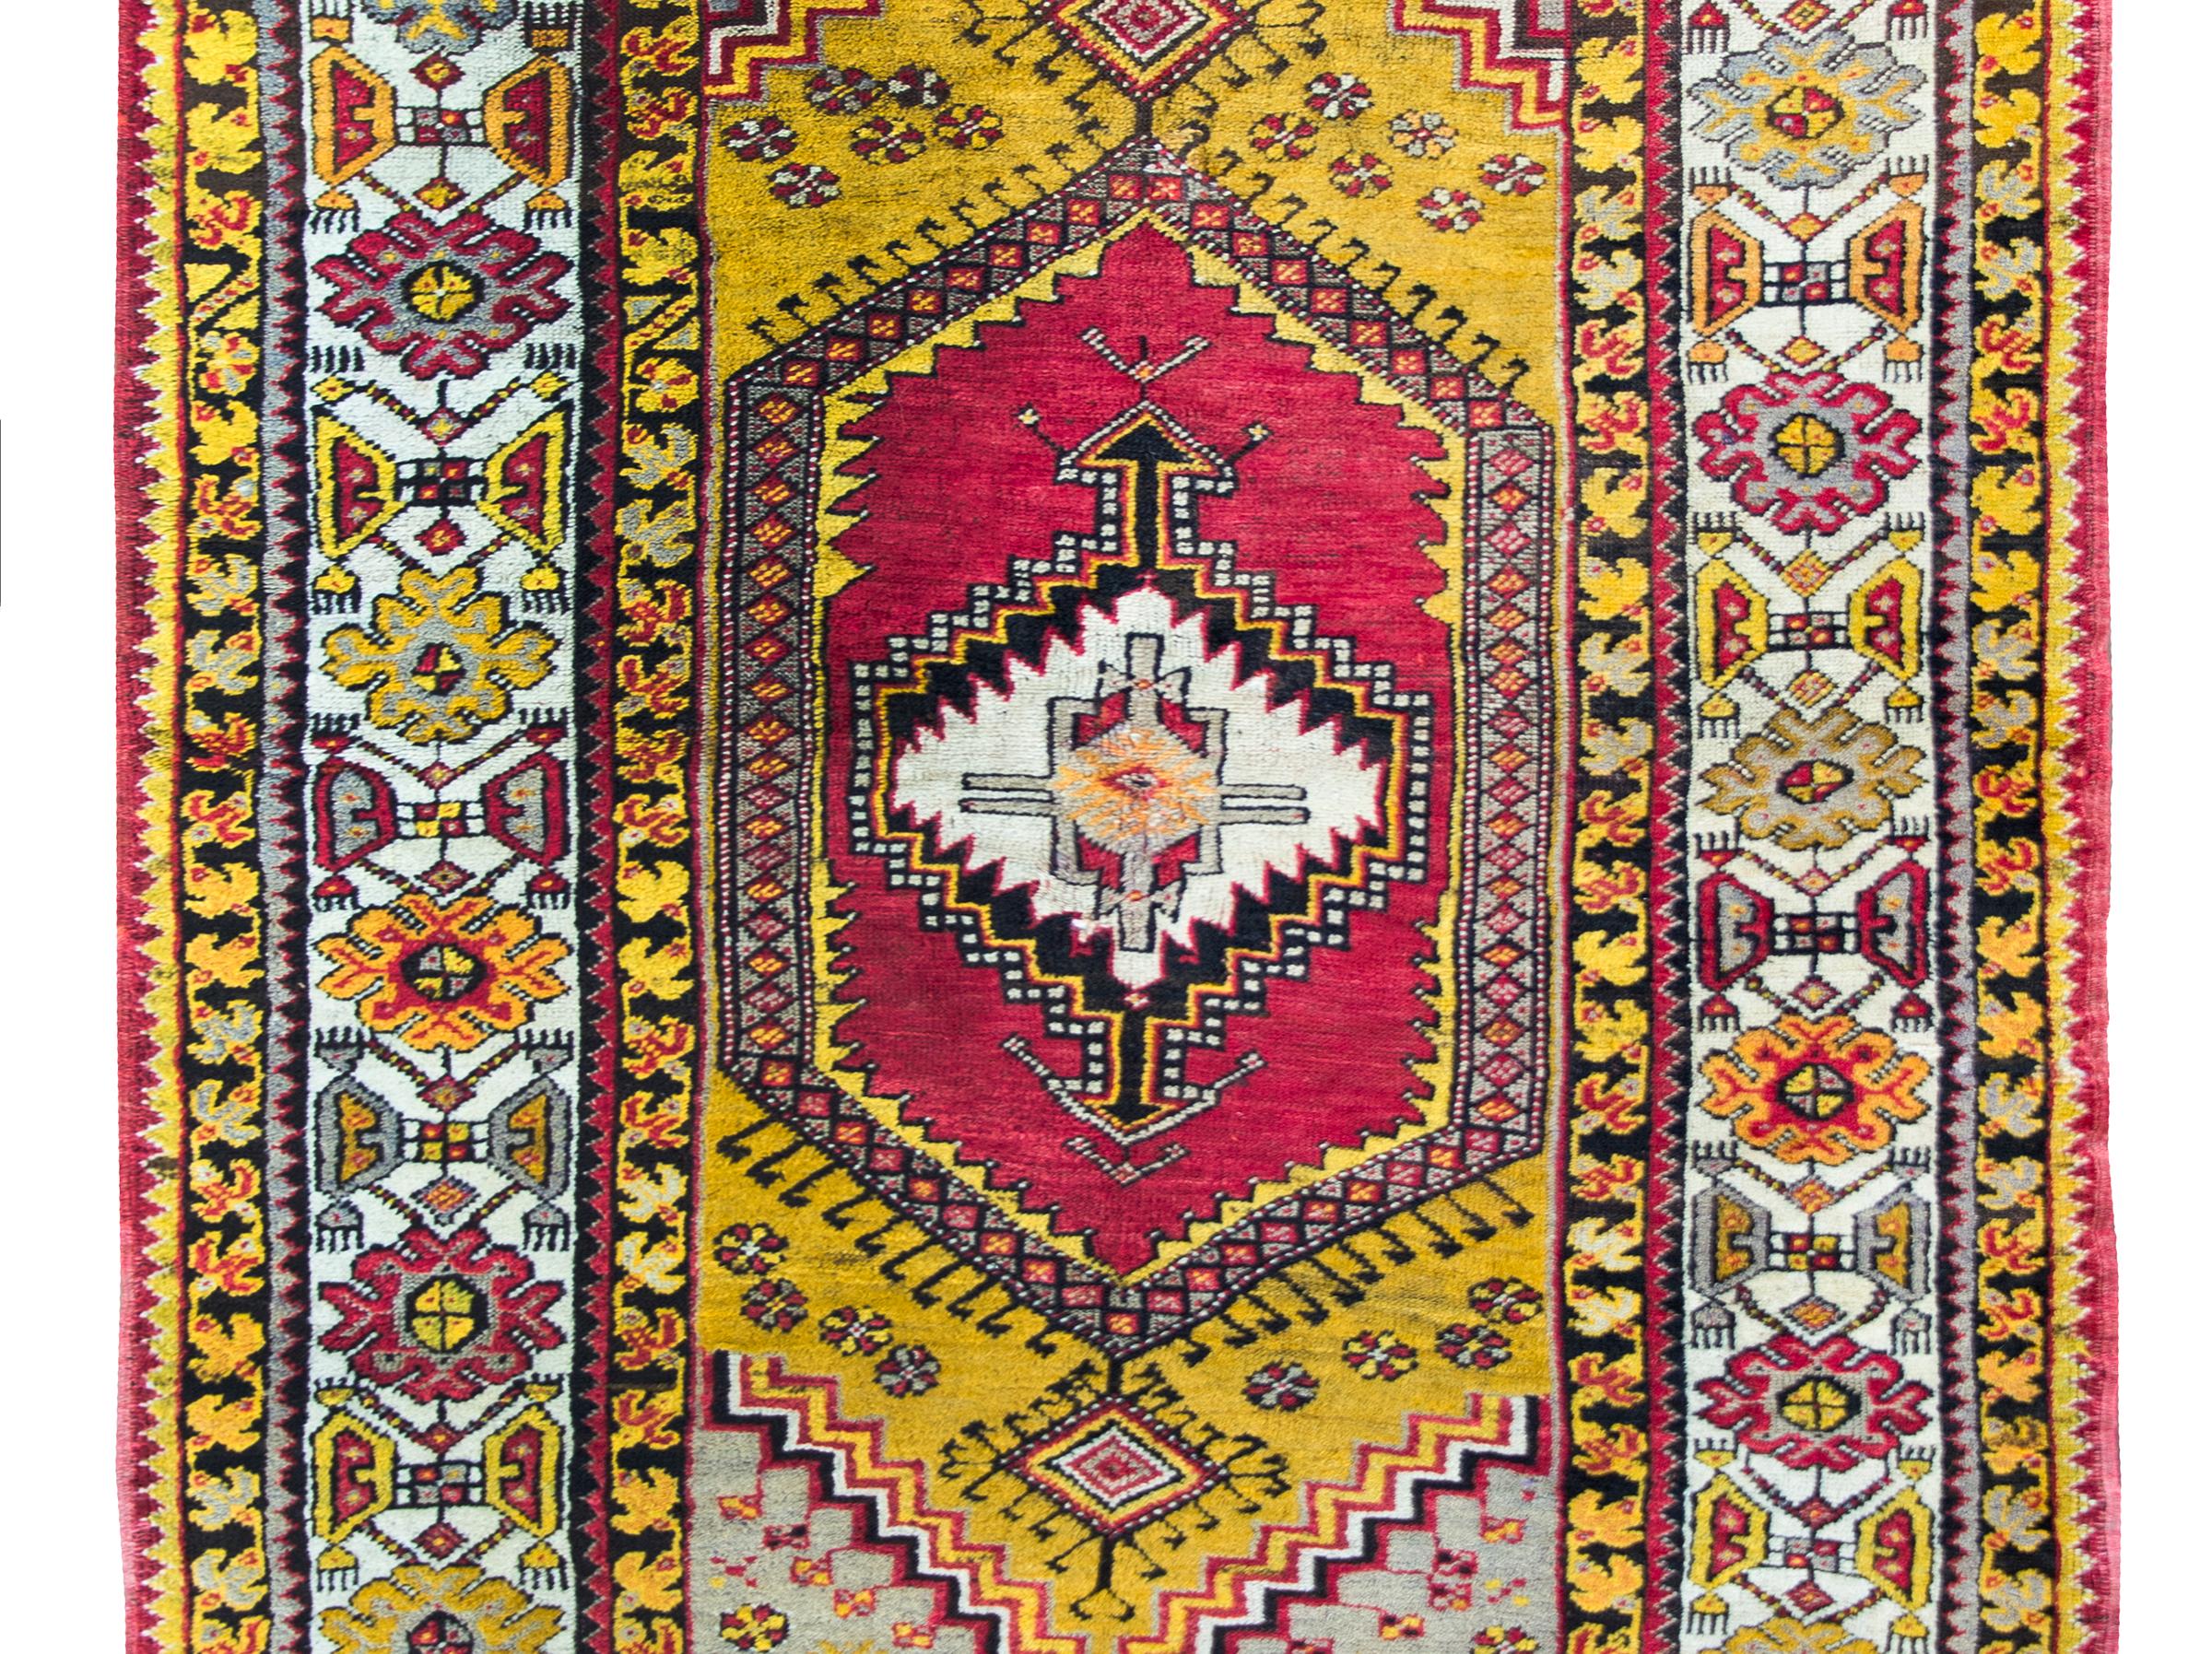 Un audacieux et brillant tapis turc de Konya du début du 20e siècle avec un motif tribal contenant un médaillon géométrique central vivant au milieu d'un champ de motifs floraux stylisés plus géométriques, le tout entouré d'une magnifique bordure